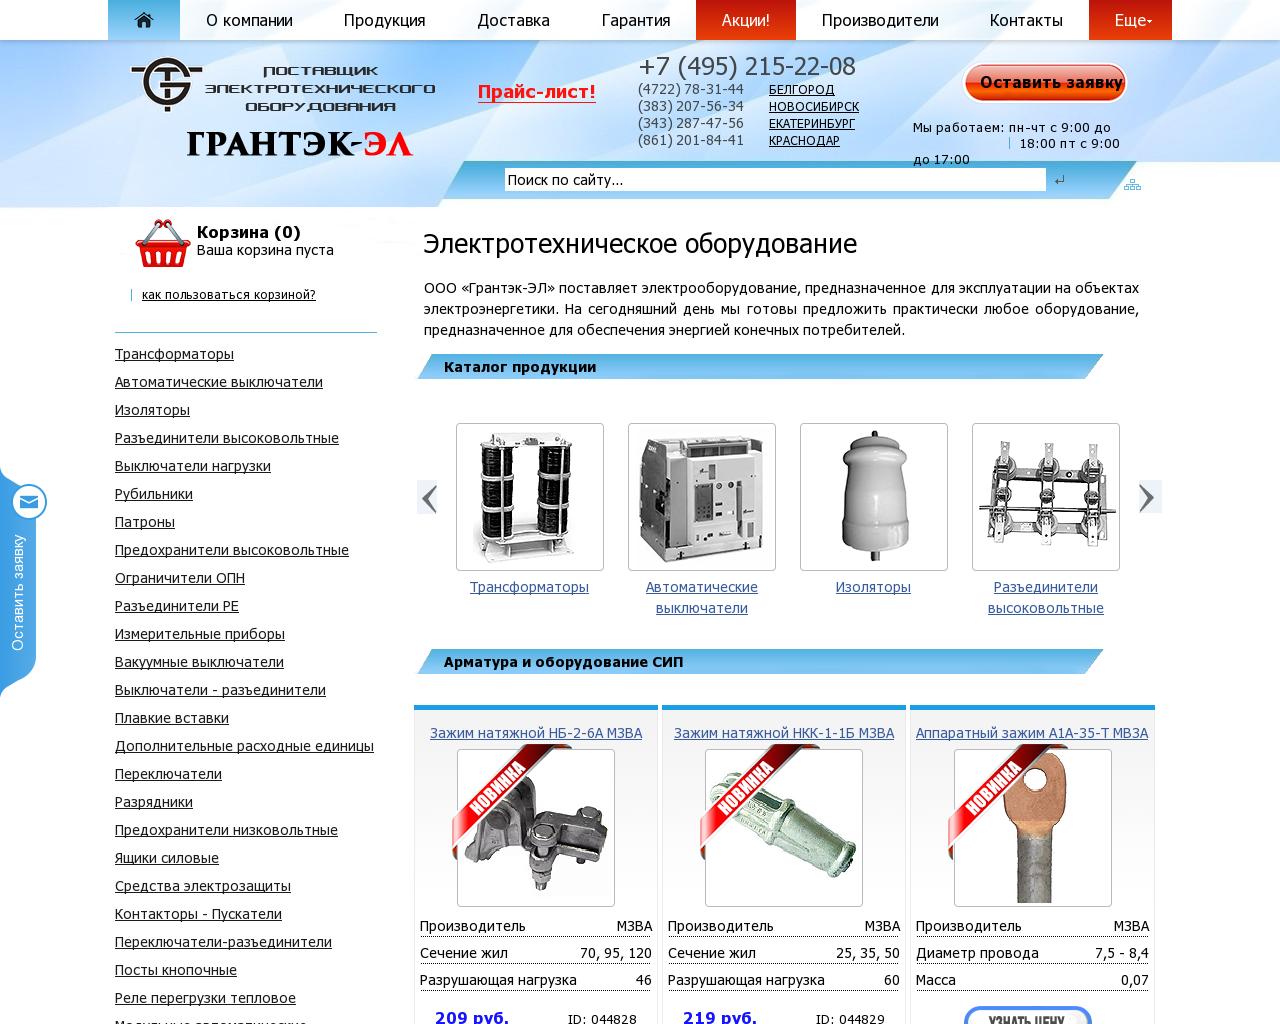 Изображение сайта grantek-svet.ru в разрешении 1280x1024